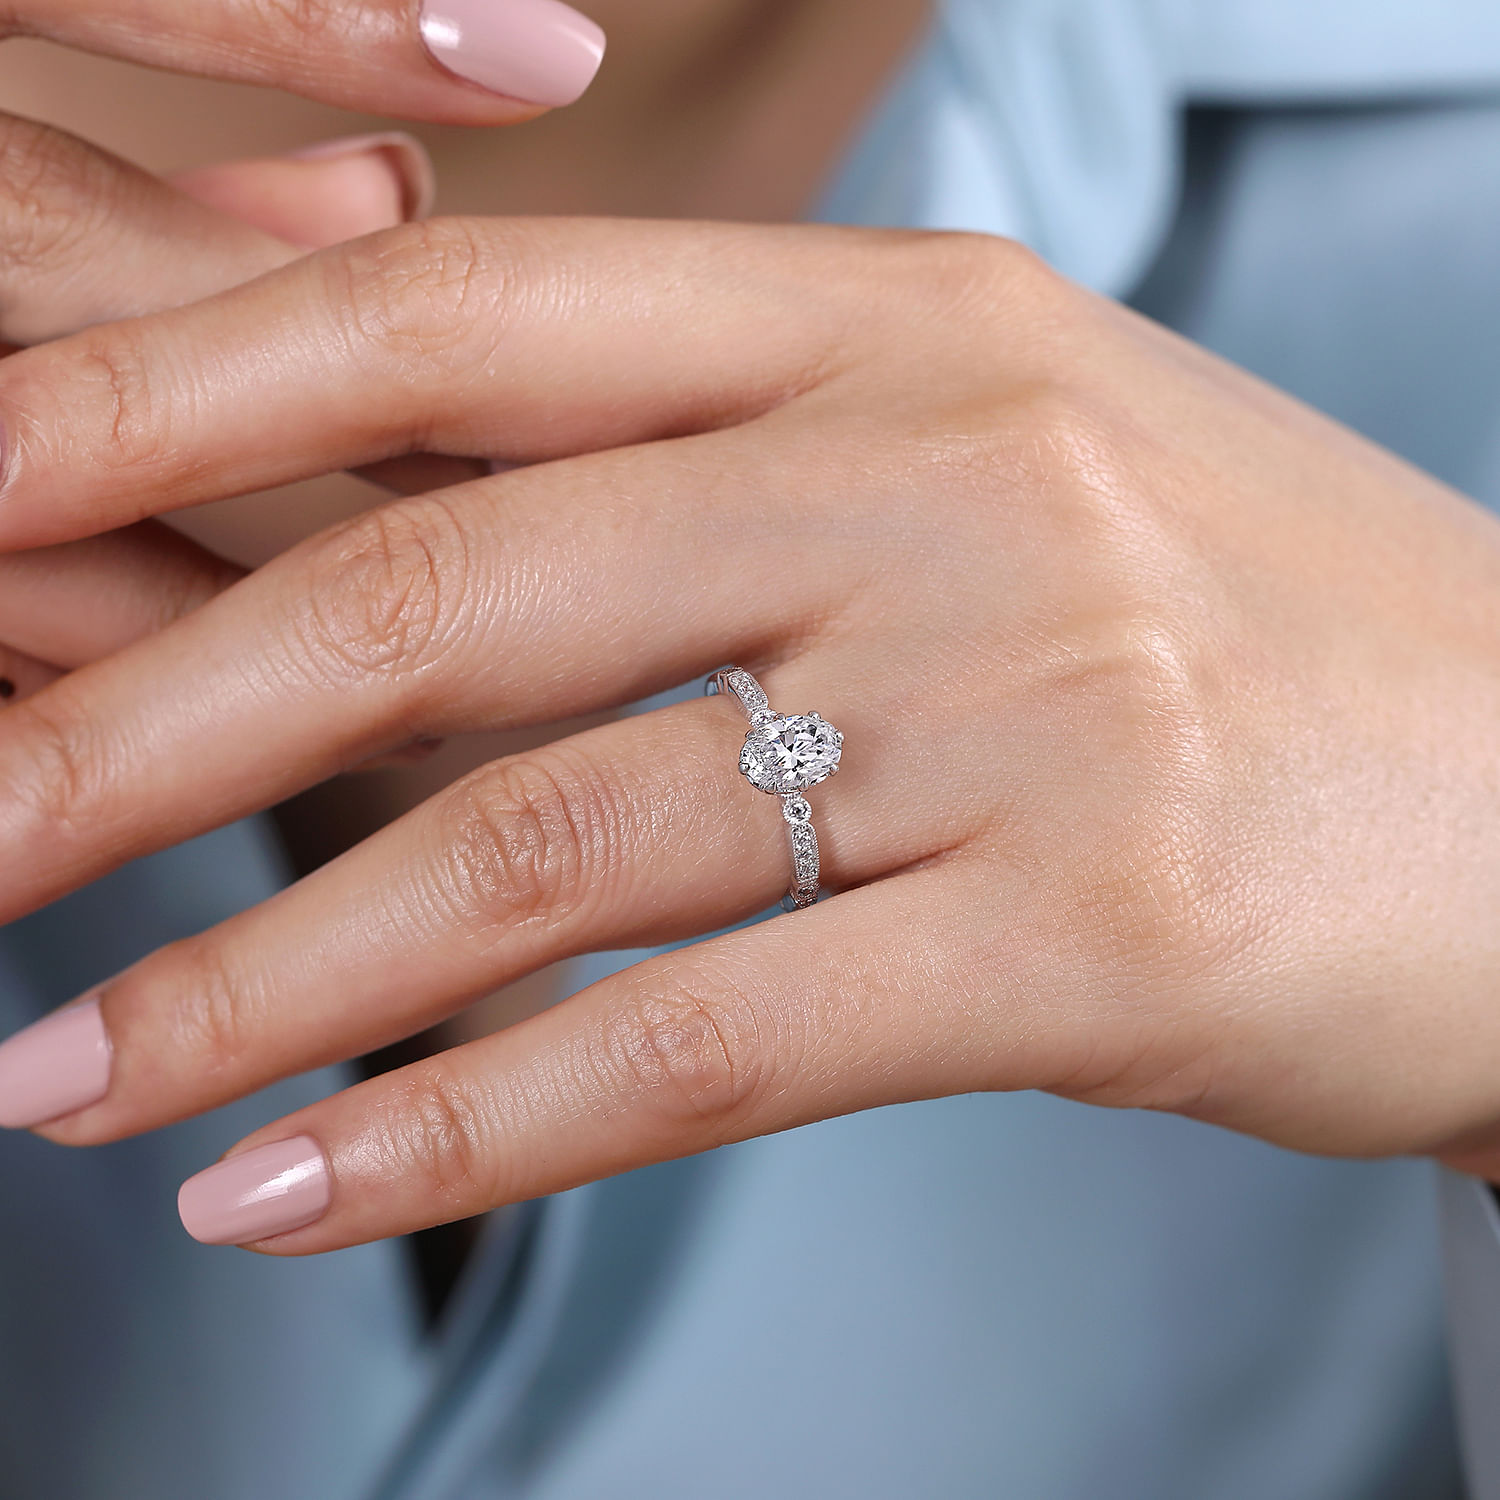 Vintage Inspired 14K White Gold Oval Diamond Engagement Ring